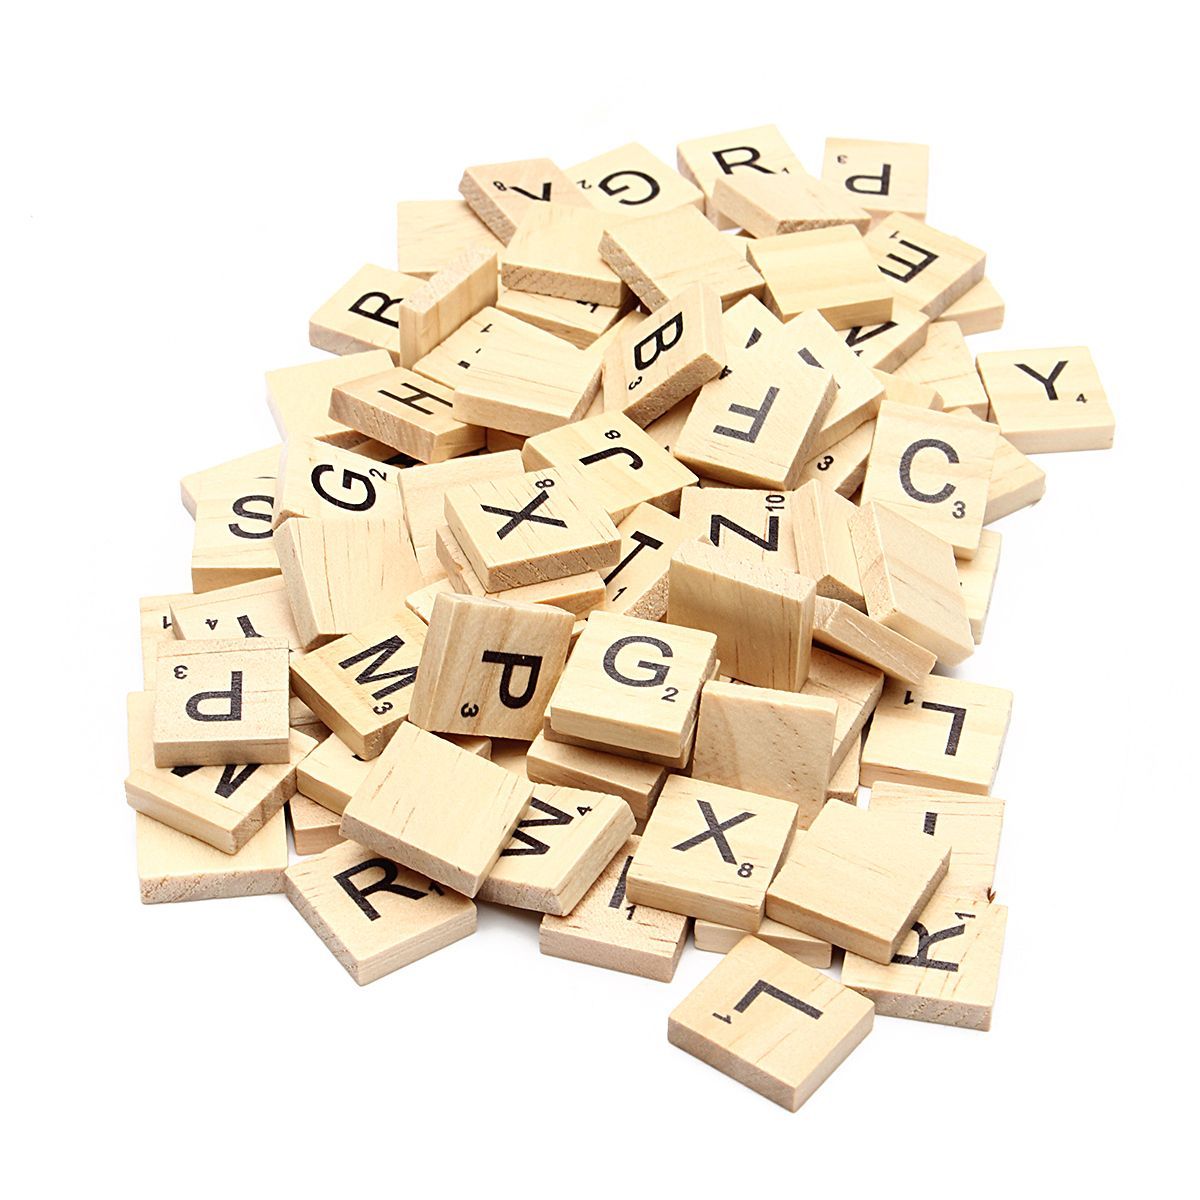 100pcs-School-Wooden-Scrabble-Tiles-Letters-Wedding-Pendants-Craft-Complete-Set-Decor-Supplies-1405999